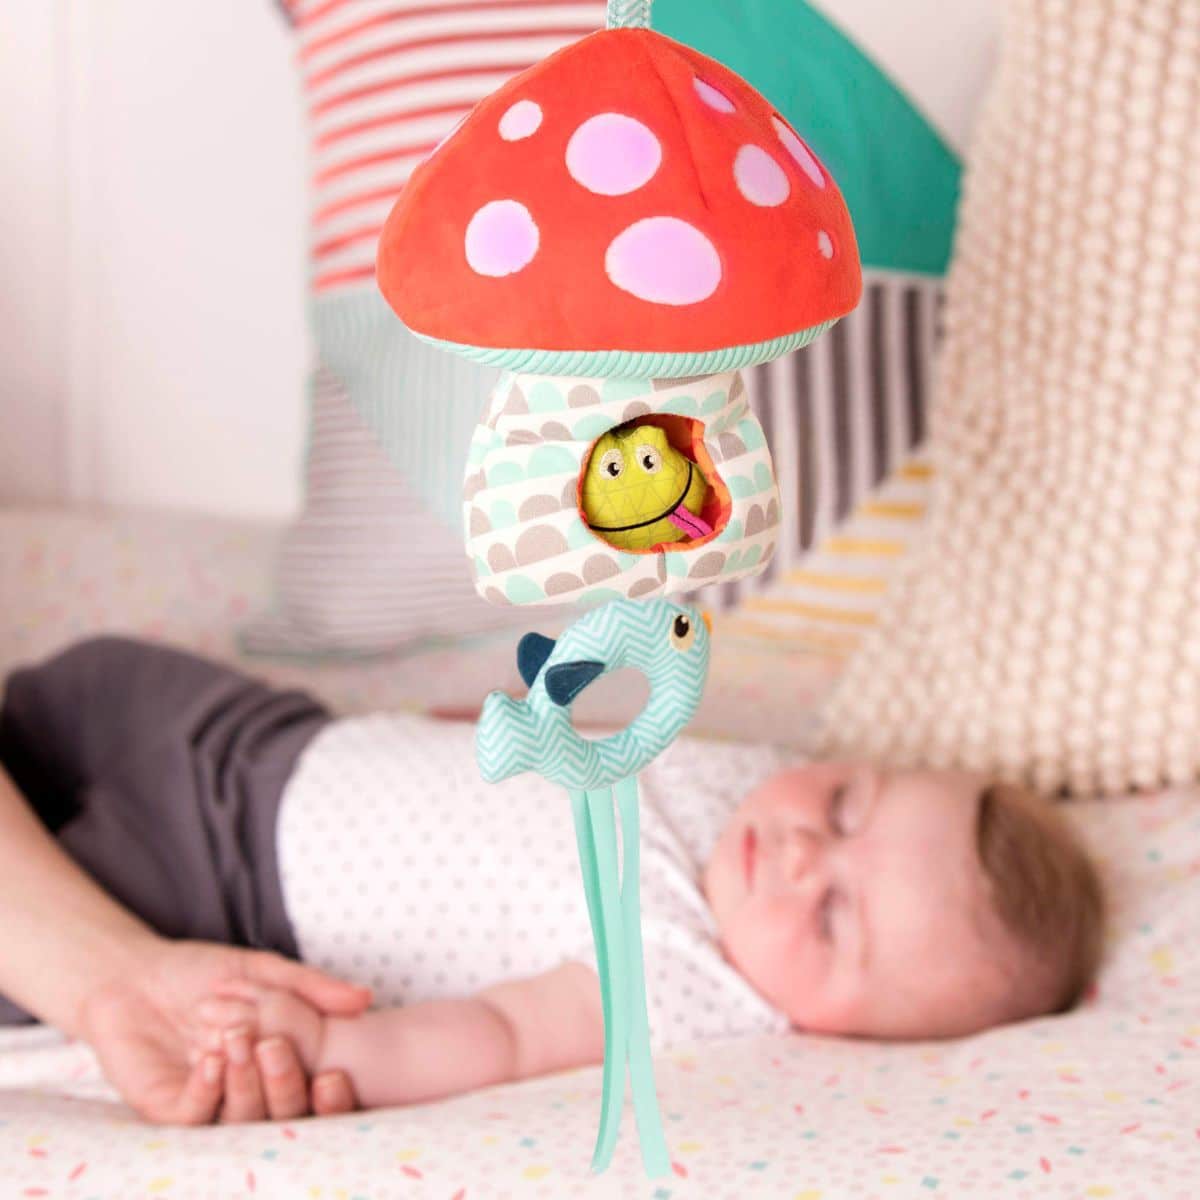 Glowing baby mushroom mobile.